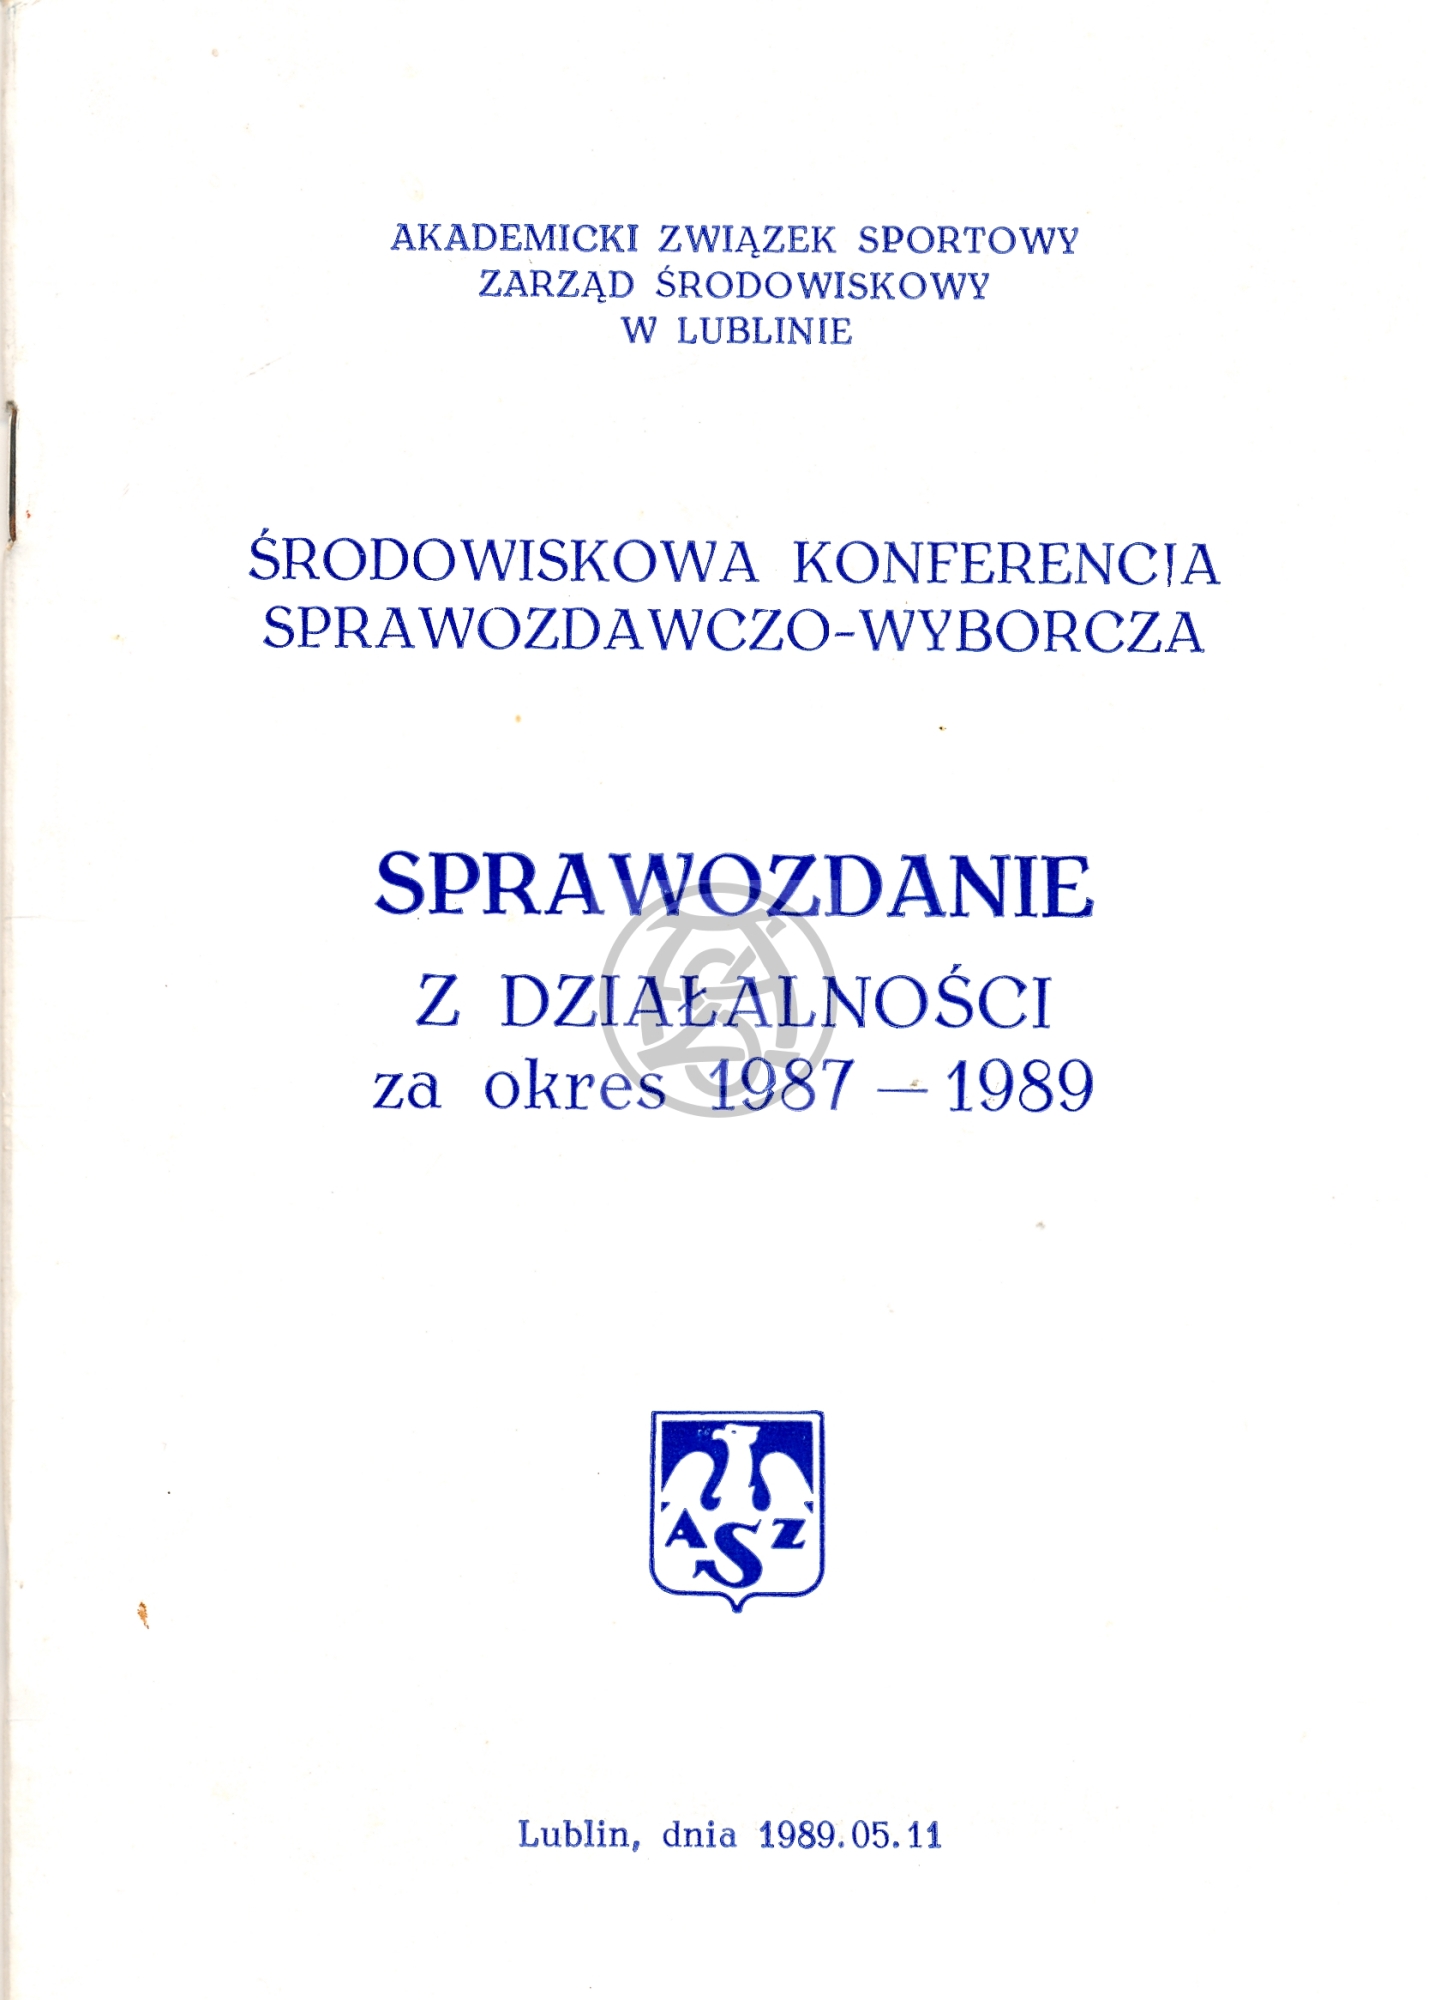 Sprawozdanie AZS Lublin za lata 1987 – 1989